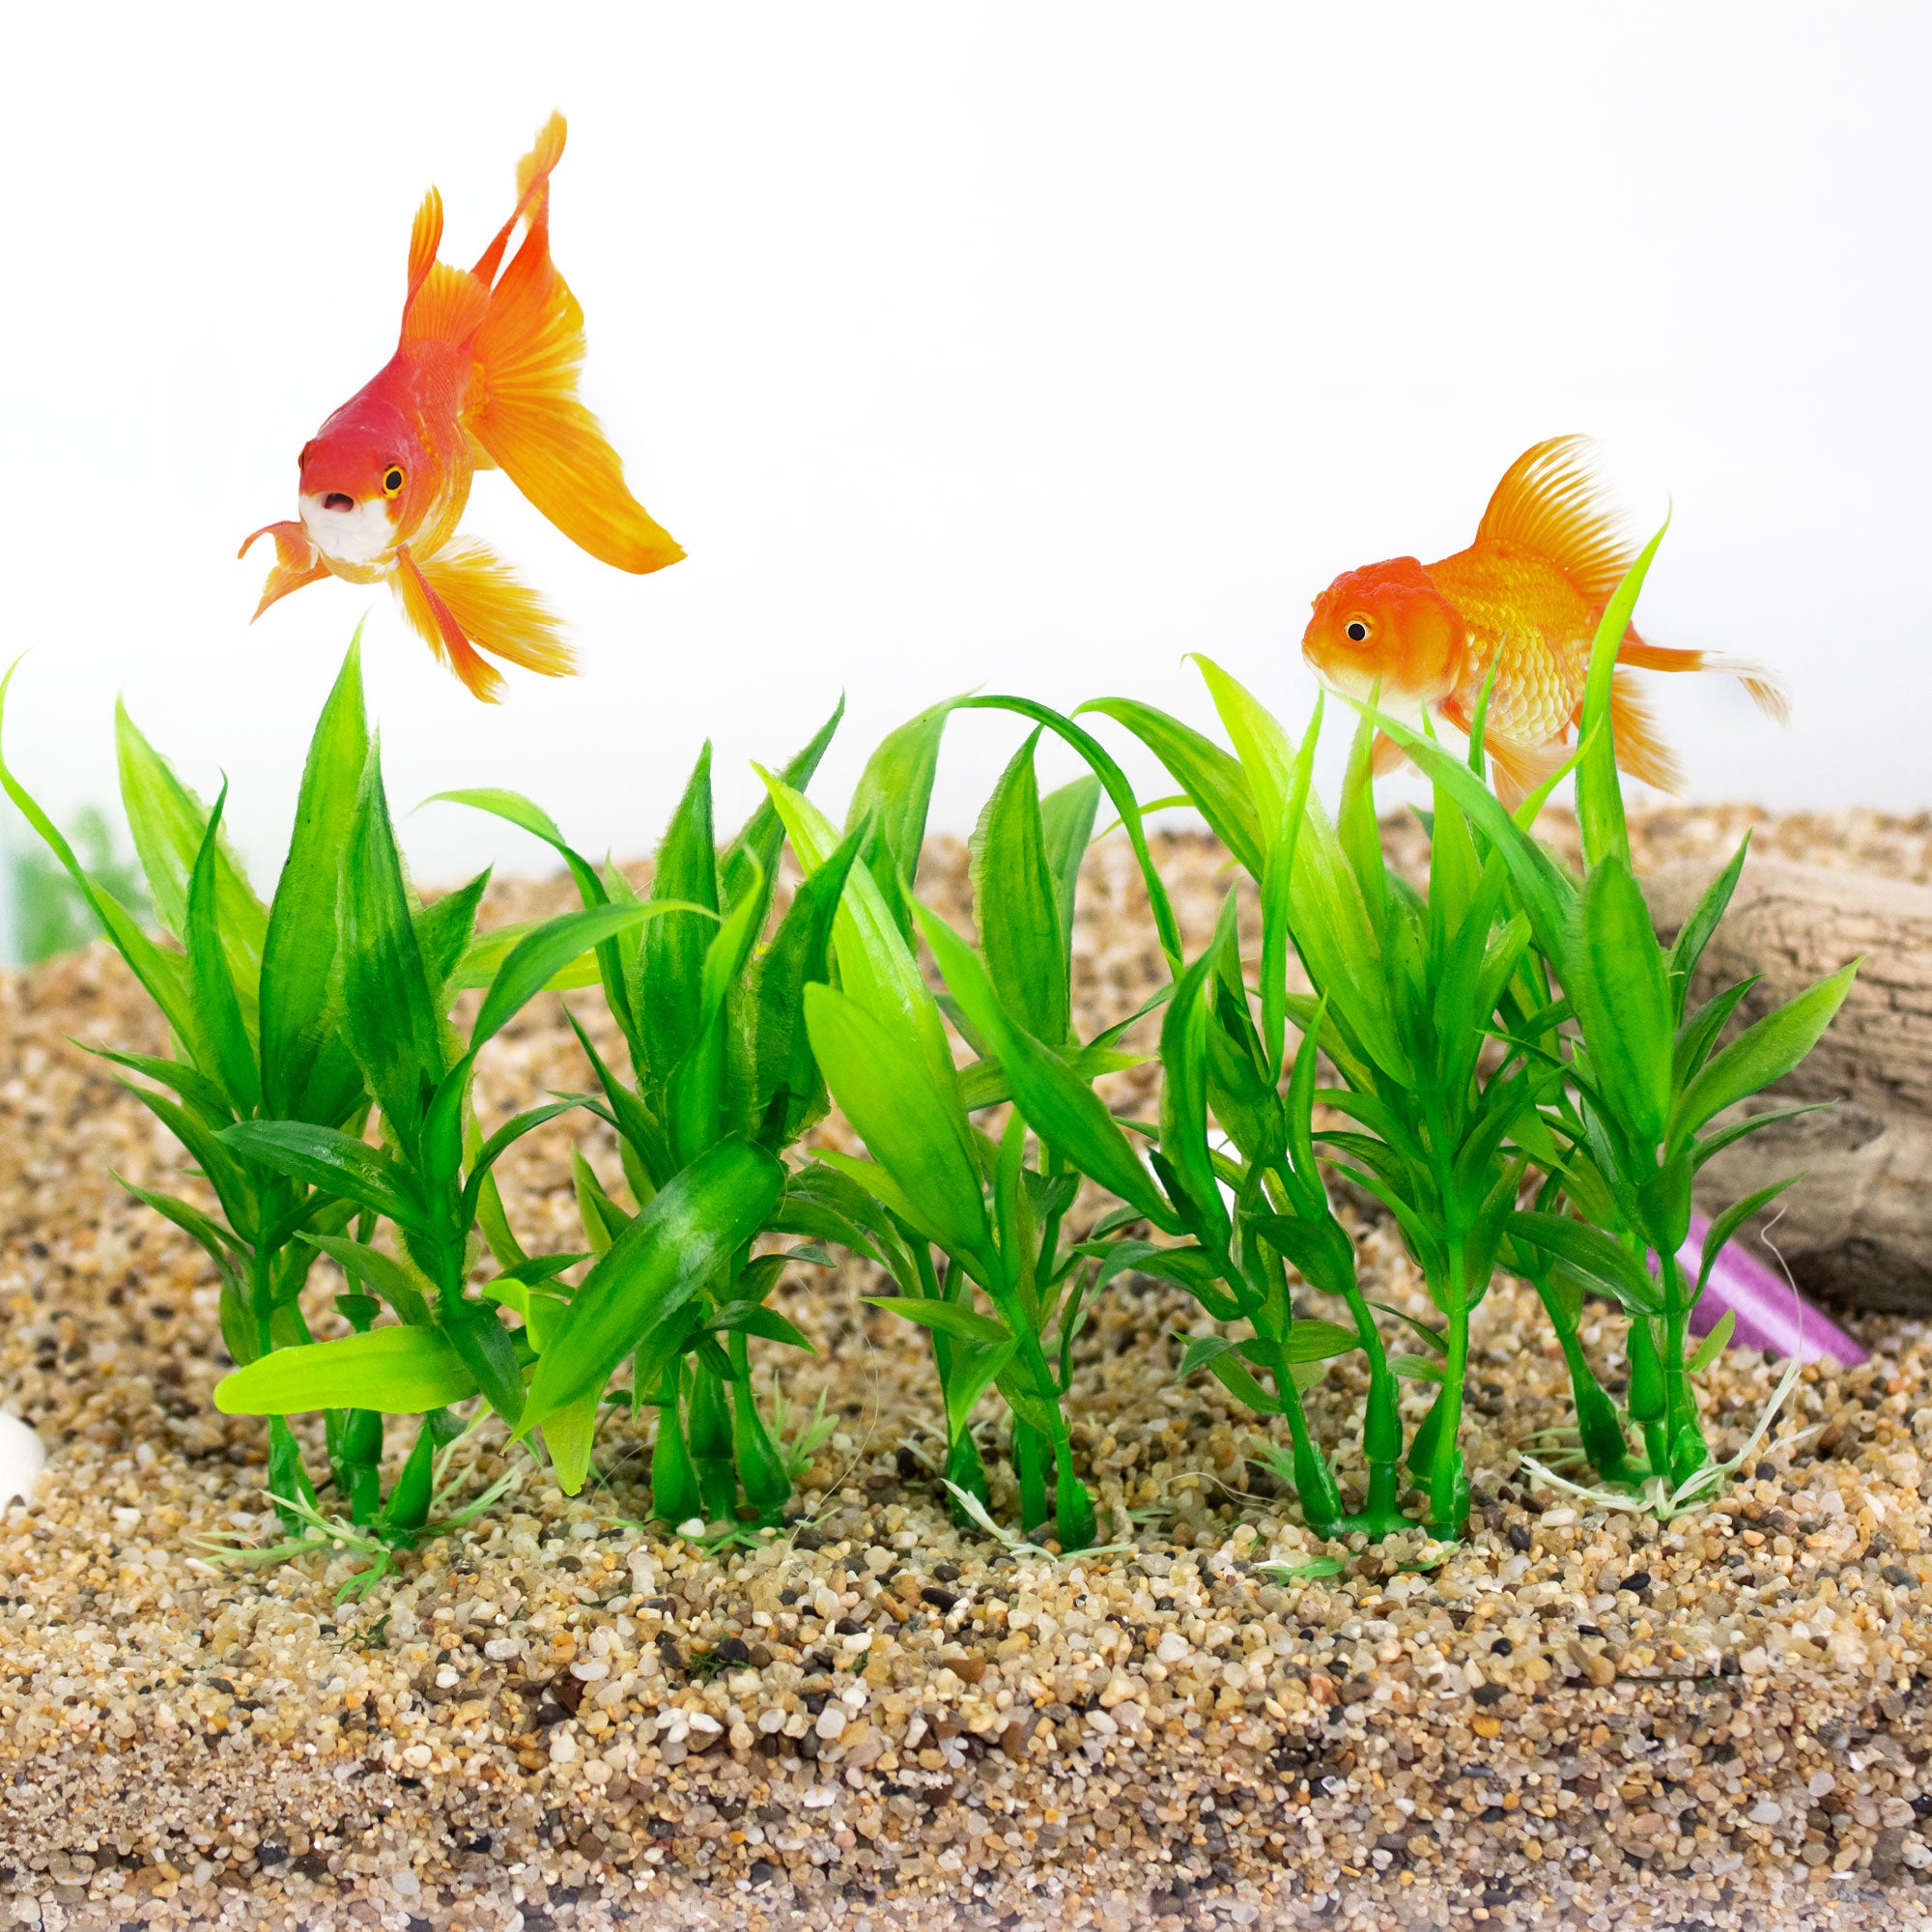 Fish Tank Decoration Ideas, Artificial grass in Aquarium